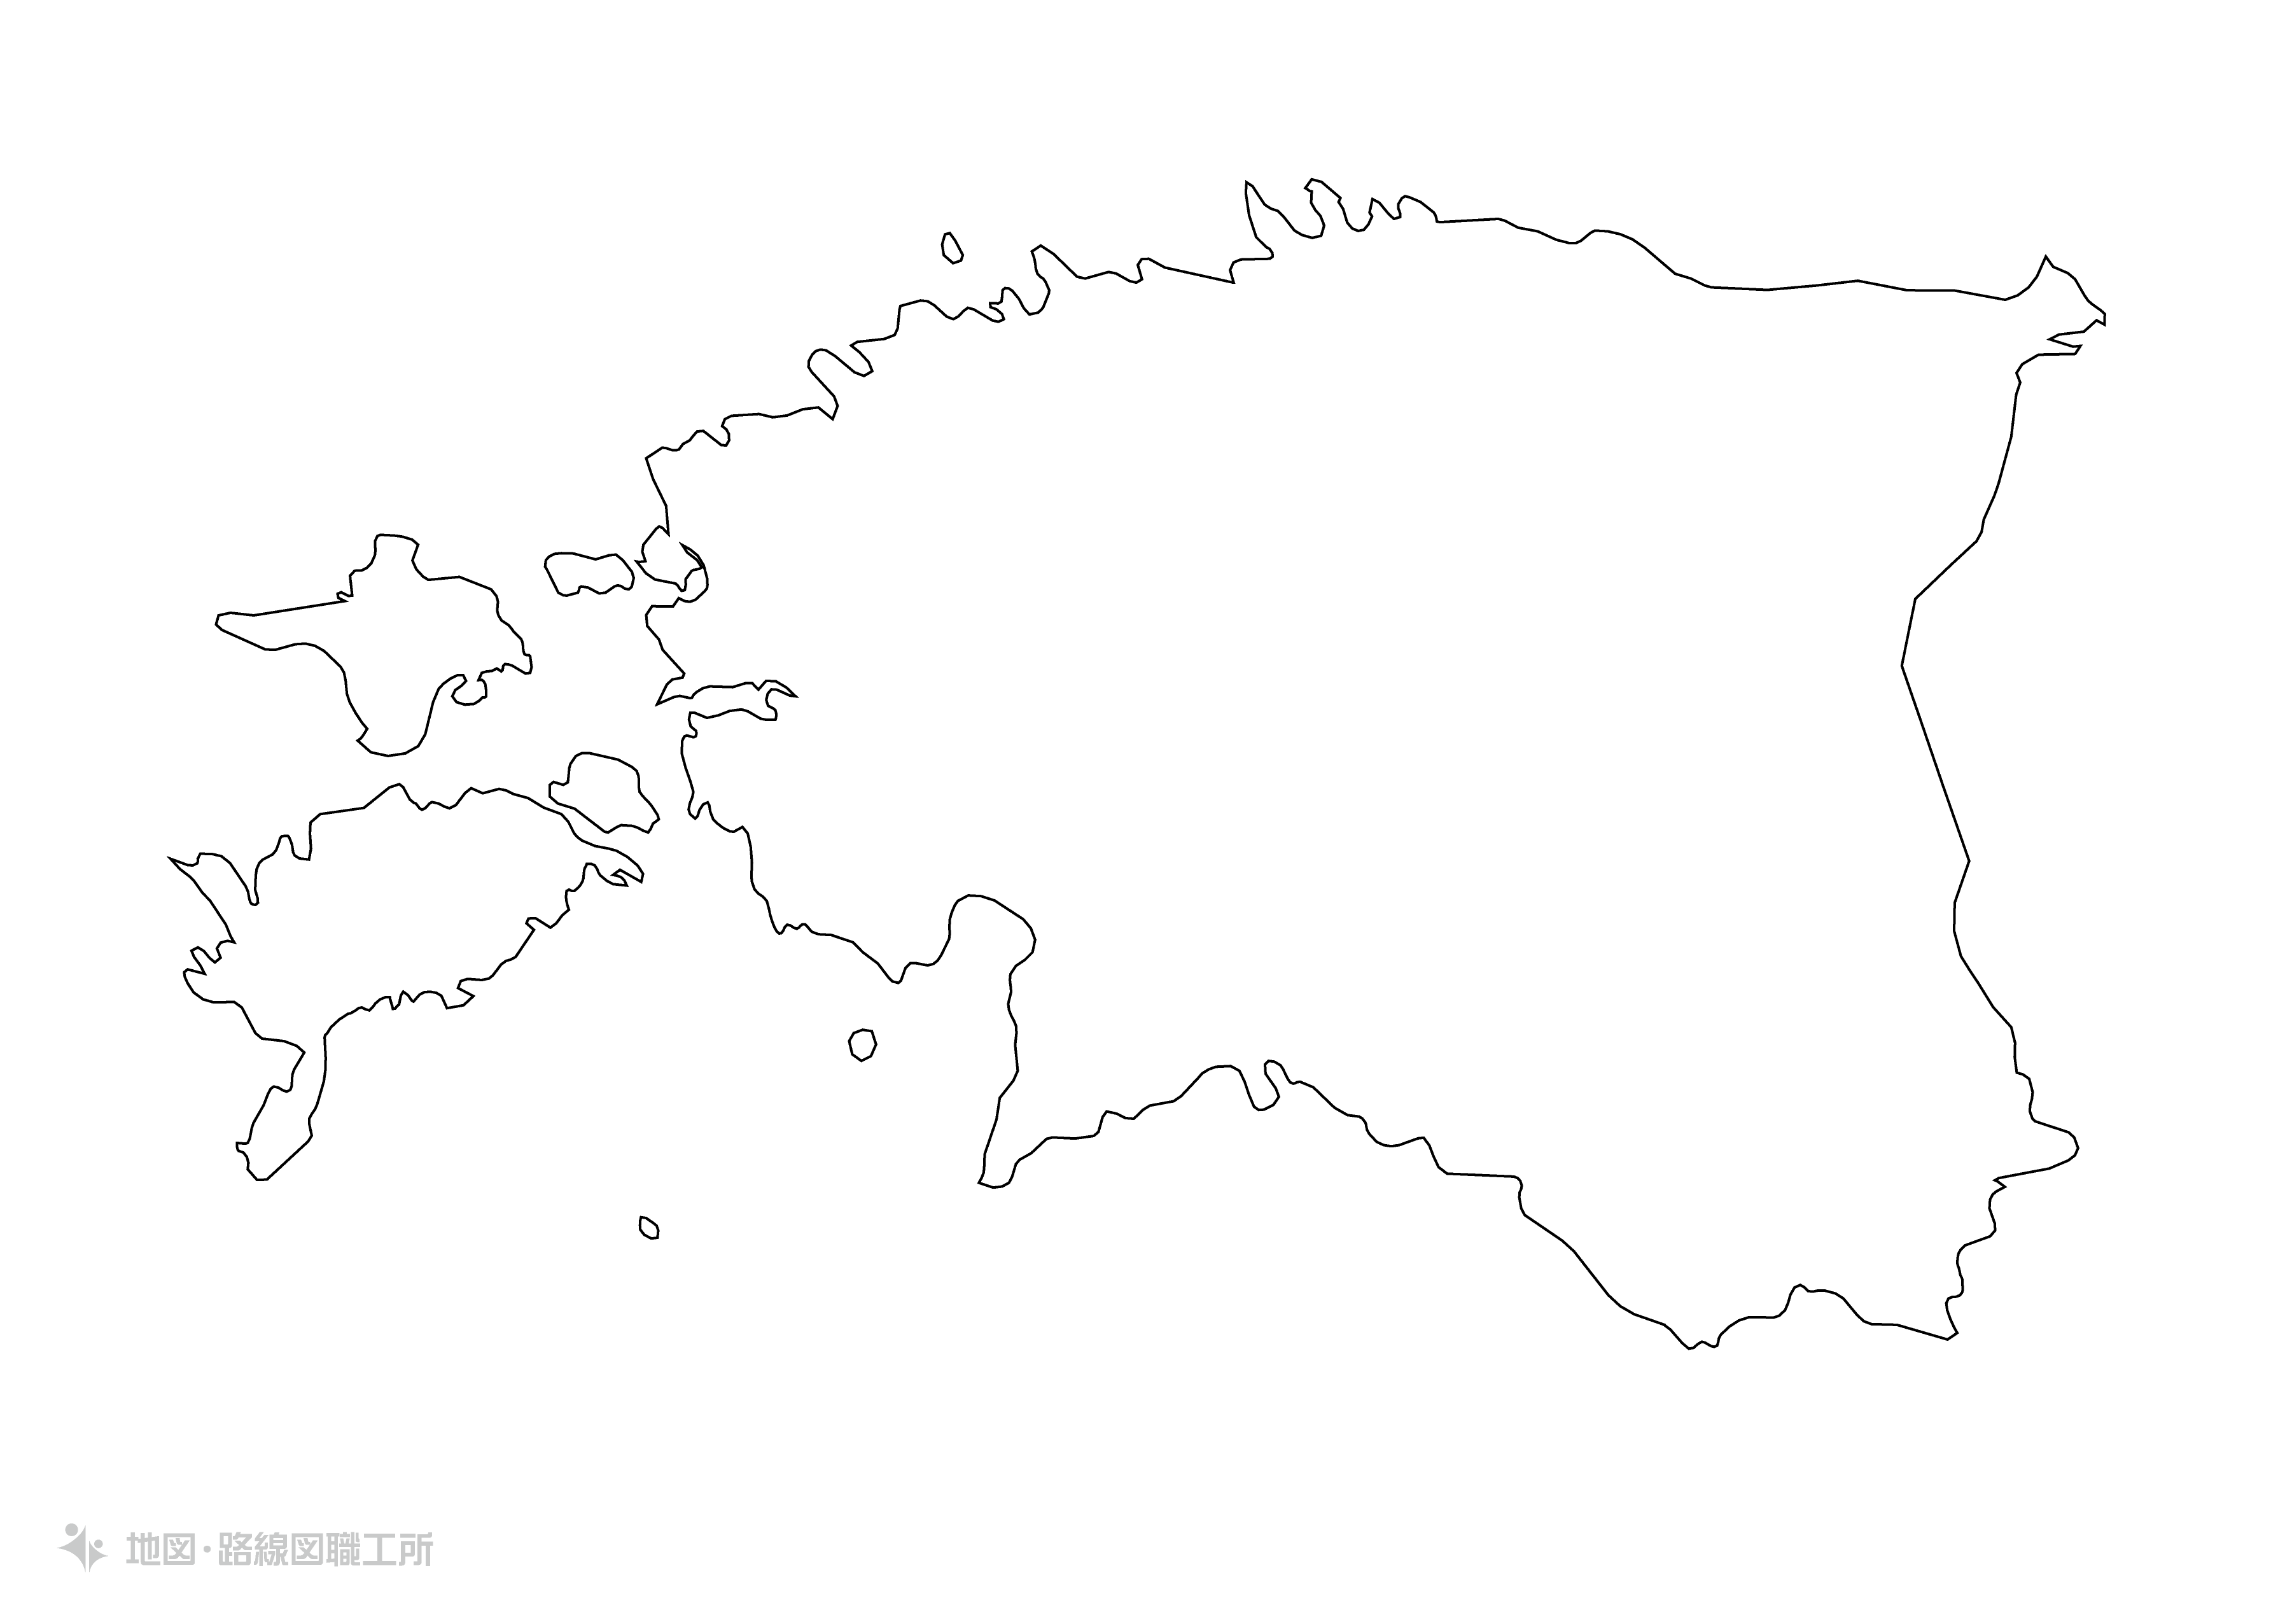 世界の白地図 エストニア共和国 republic-of-estonia map